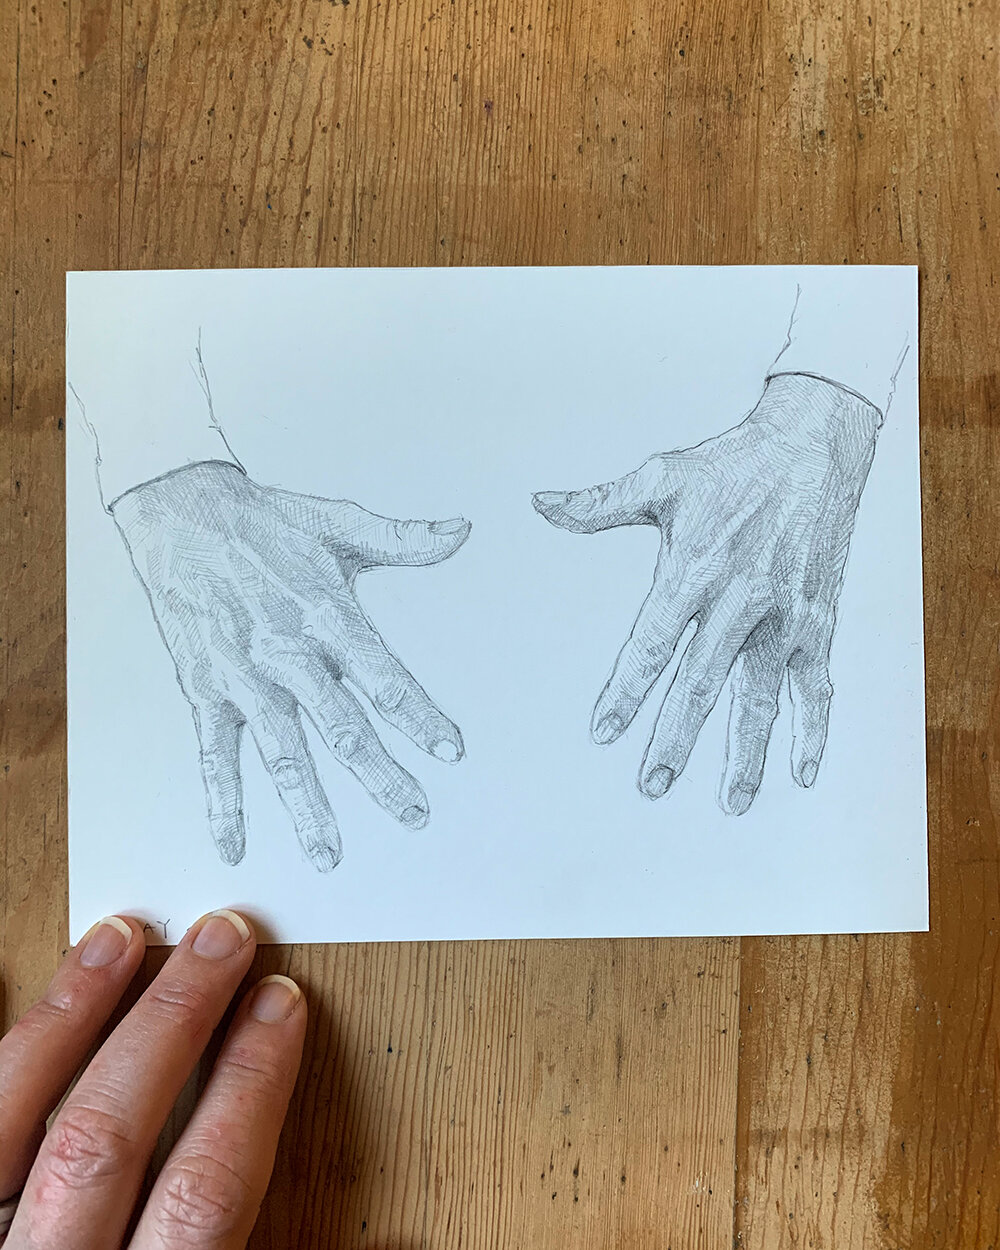 100 Hand Drawing Project — Elizabeth Floyd